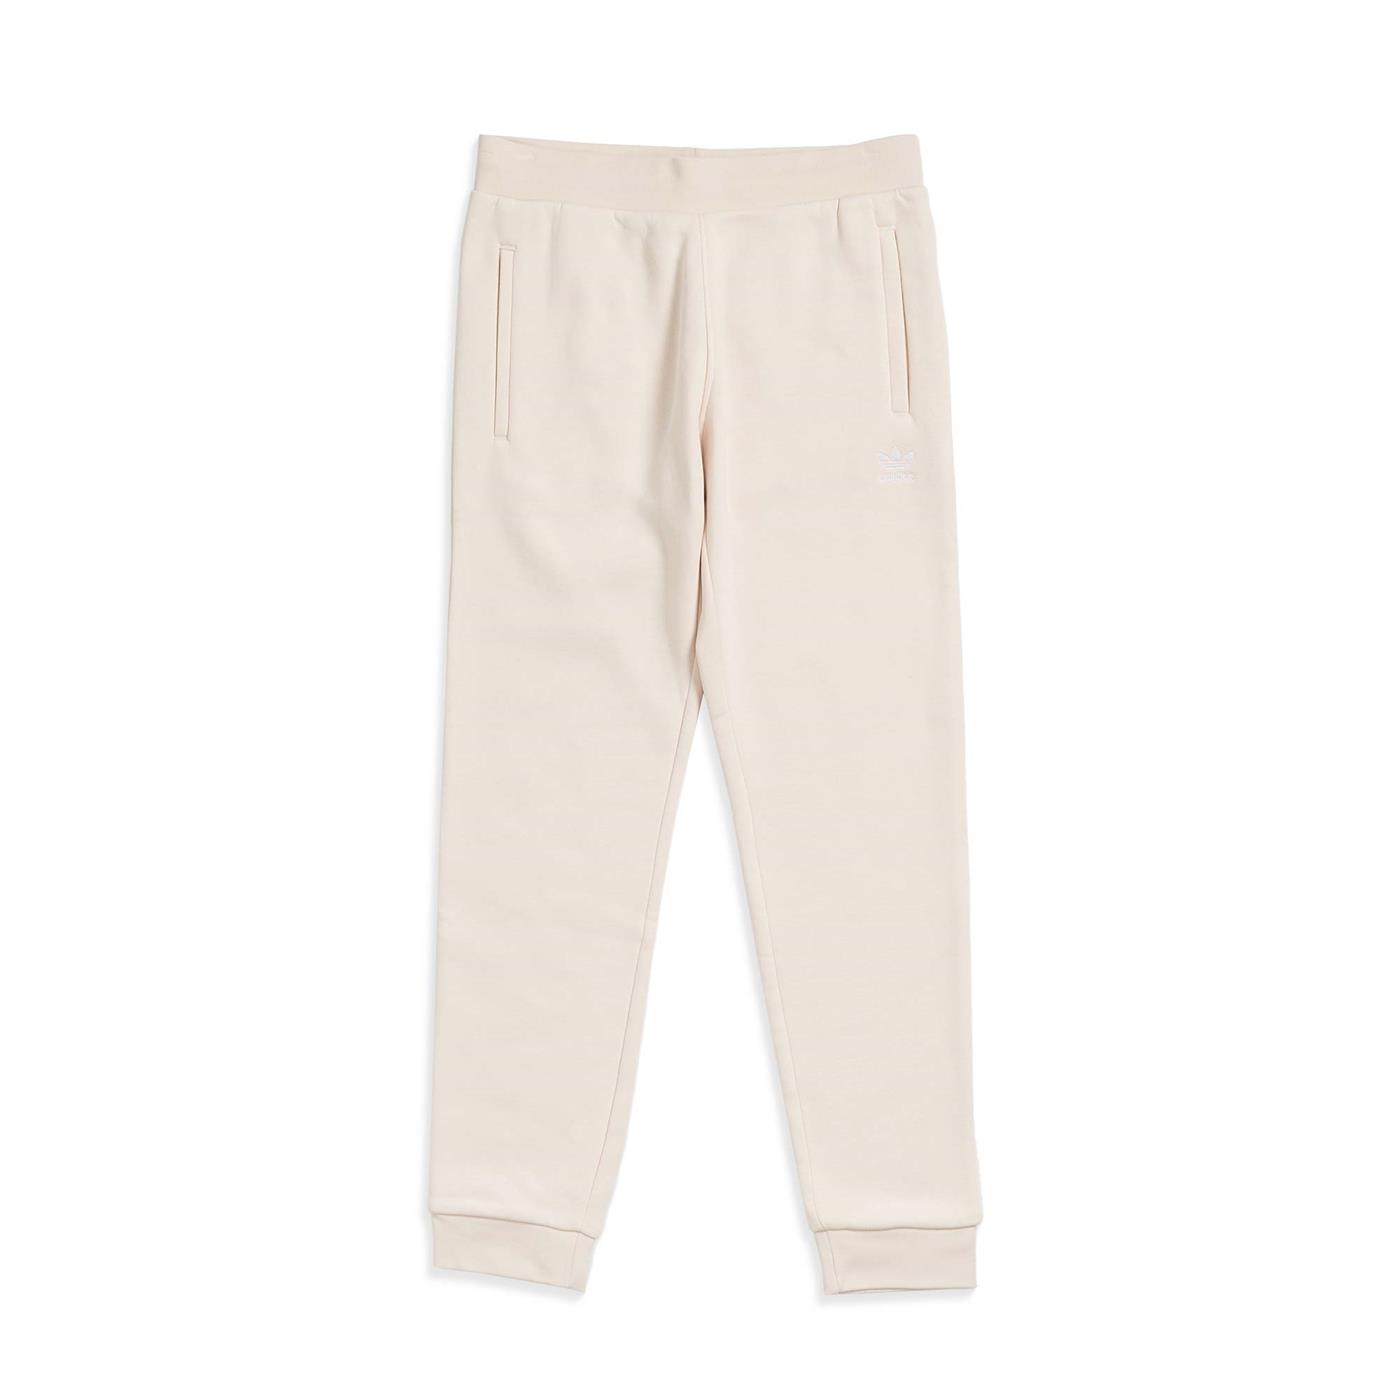 EllisonbronzeShops Pantalones ADIDAS Essentials Pant Beige de Hombre | adidas 2018 fashion style 2019 | HE9410